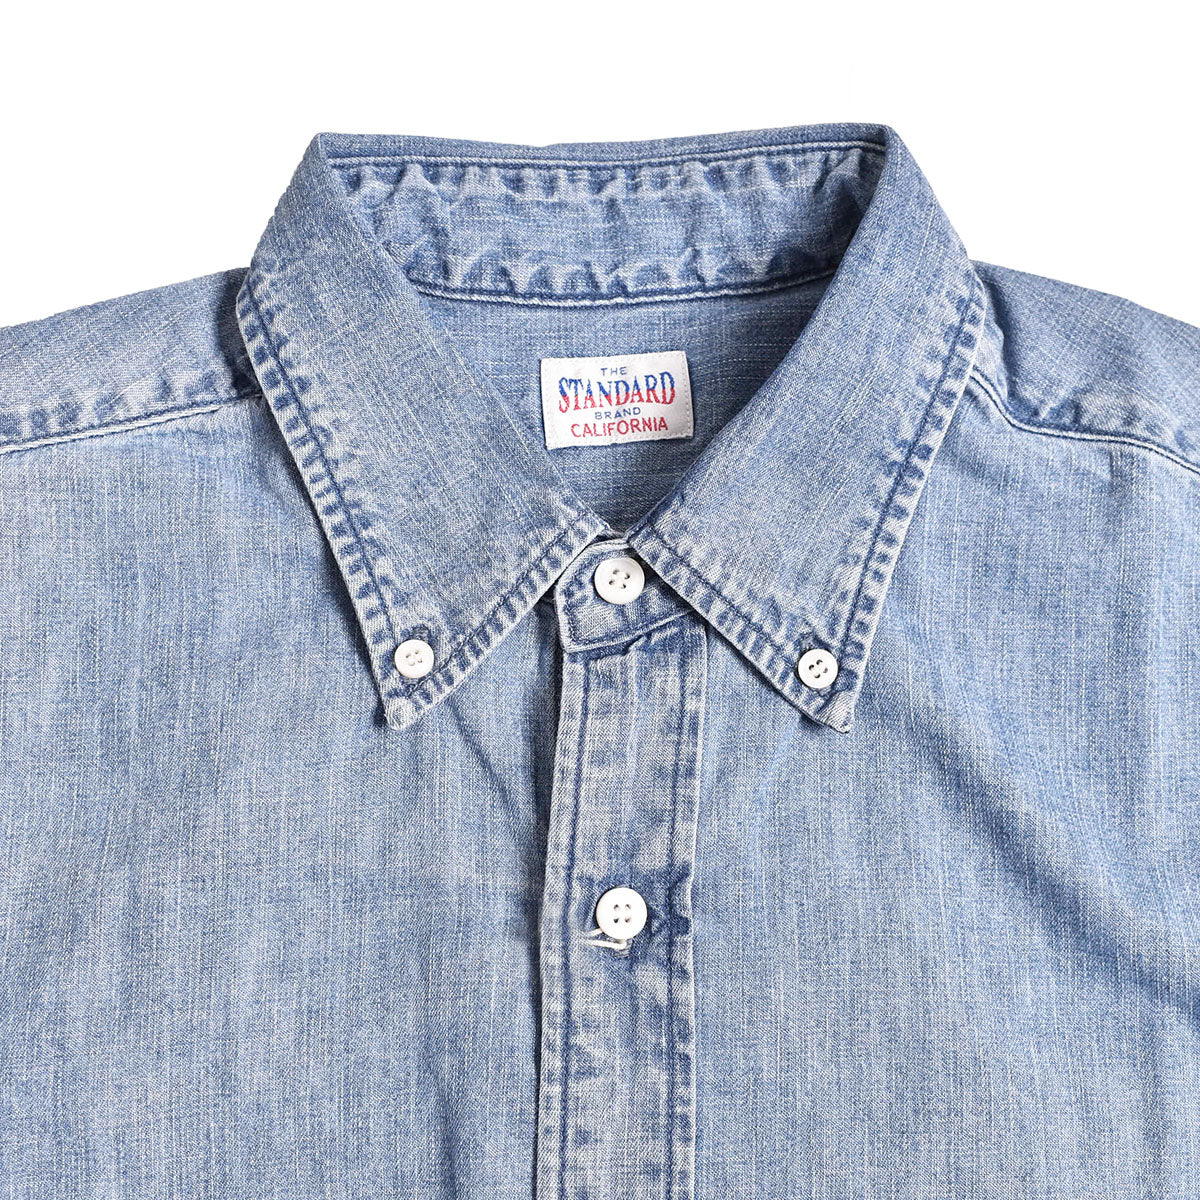 STANDARD CALIFORNIA]SD Denim Button-Down Shirt Vintage Wash/INDIGO